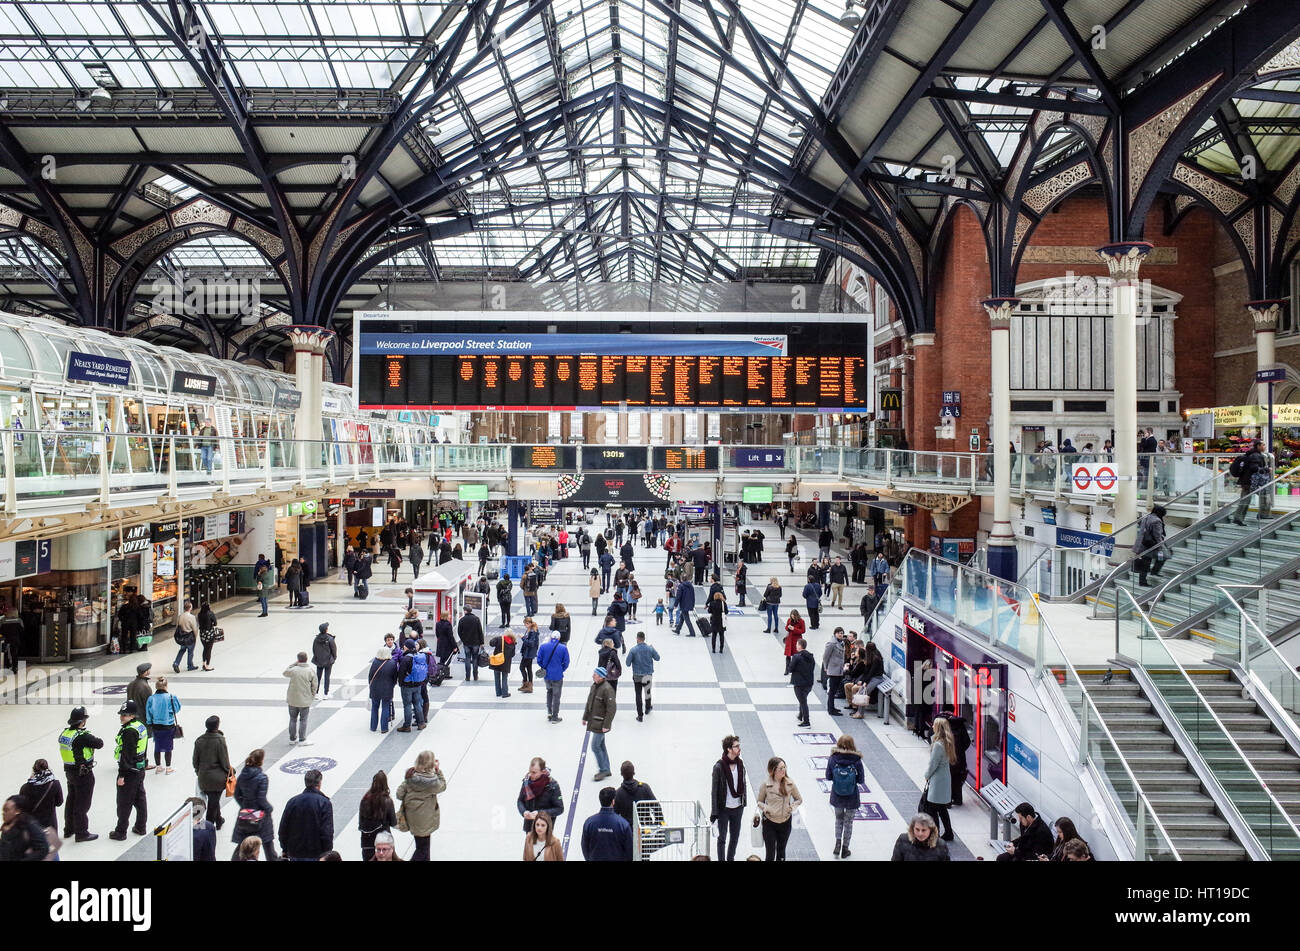 Passagiere warten für Züge und die Station Boards in der Londoner Liverpool Street Station ansehen Stockfoto